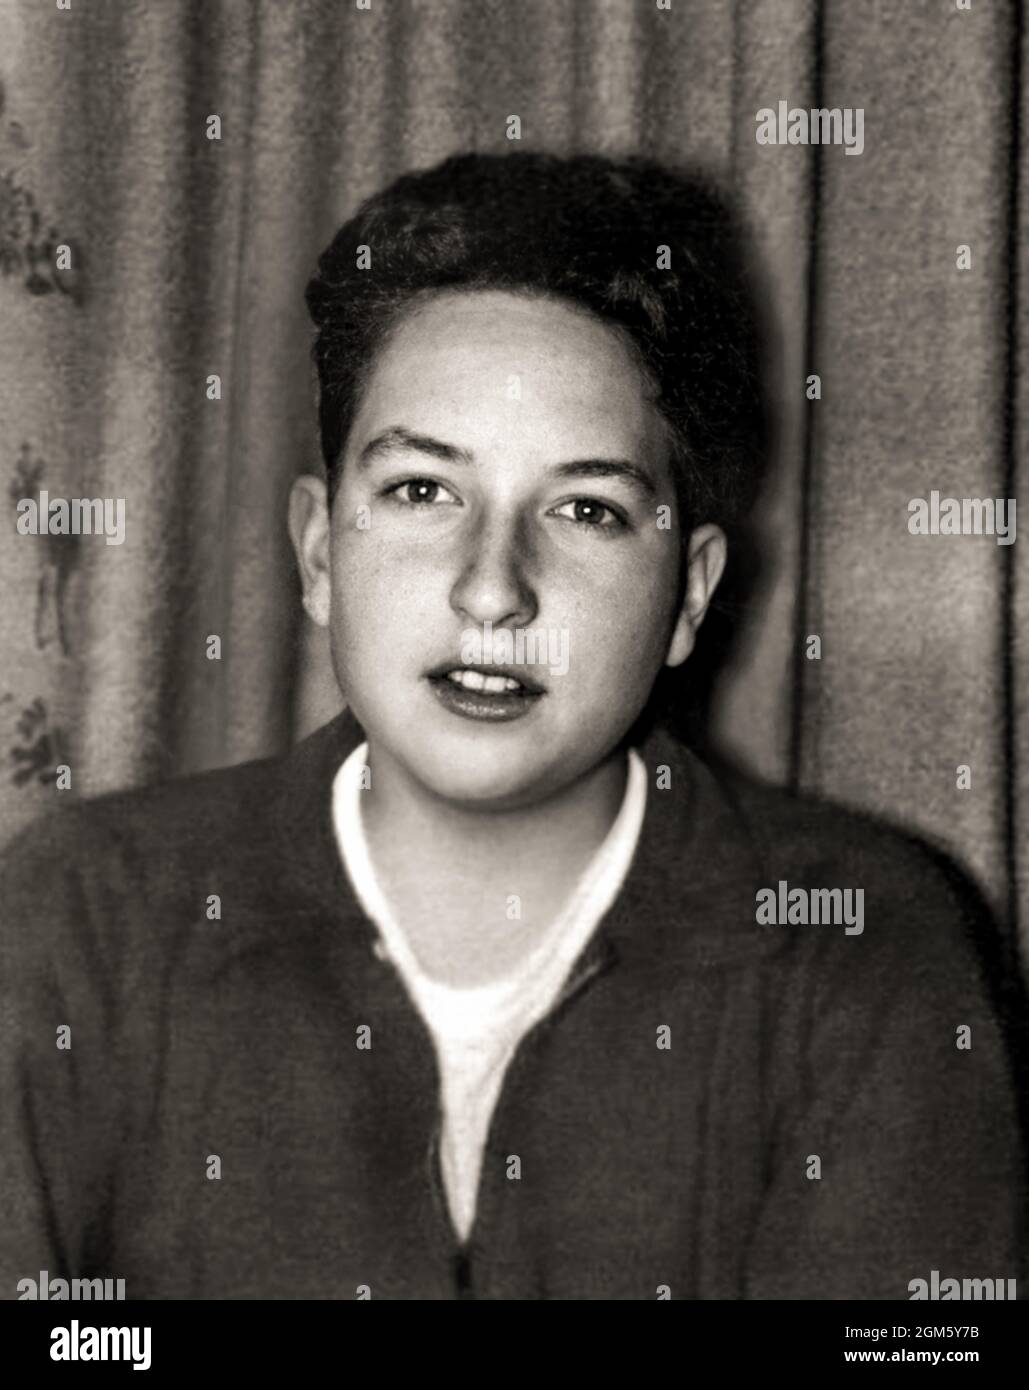 1956 , USA: Le célèbre chanteur et compositeur américain BOB DYLAN ( né en 24 mai 1941 ) quand était un jeune garçon de 15 ans . En 2016, Dylan a reçu le Prix Nobel de littérature . Photographe inconnu. - HISTOIRE - FOTO STORICHE - Personalità da bambino Bambini da giovane - personnalités quand était jeune - FANTAZIA - ENFANCE - BAMBINO - BAMBINI - ENFANTS - ENFANT - MUSIQUE - MUSICA - cantante - COMPOORE - PREMIO NOBEL PER LA LETTERATURA - PORTRAIT - RITRATTO -- - ARCHIVIO GBB Banque D'Images